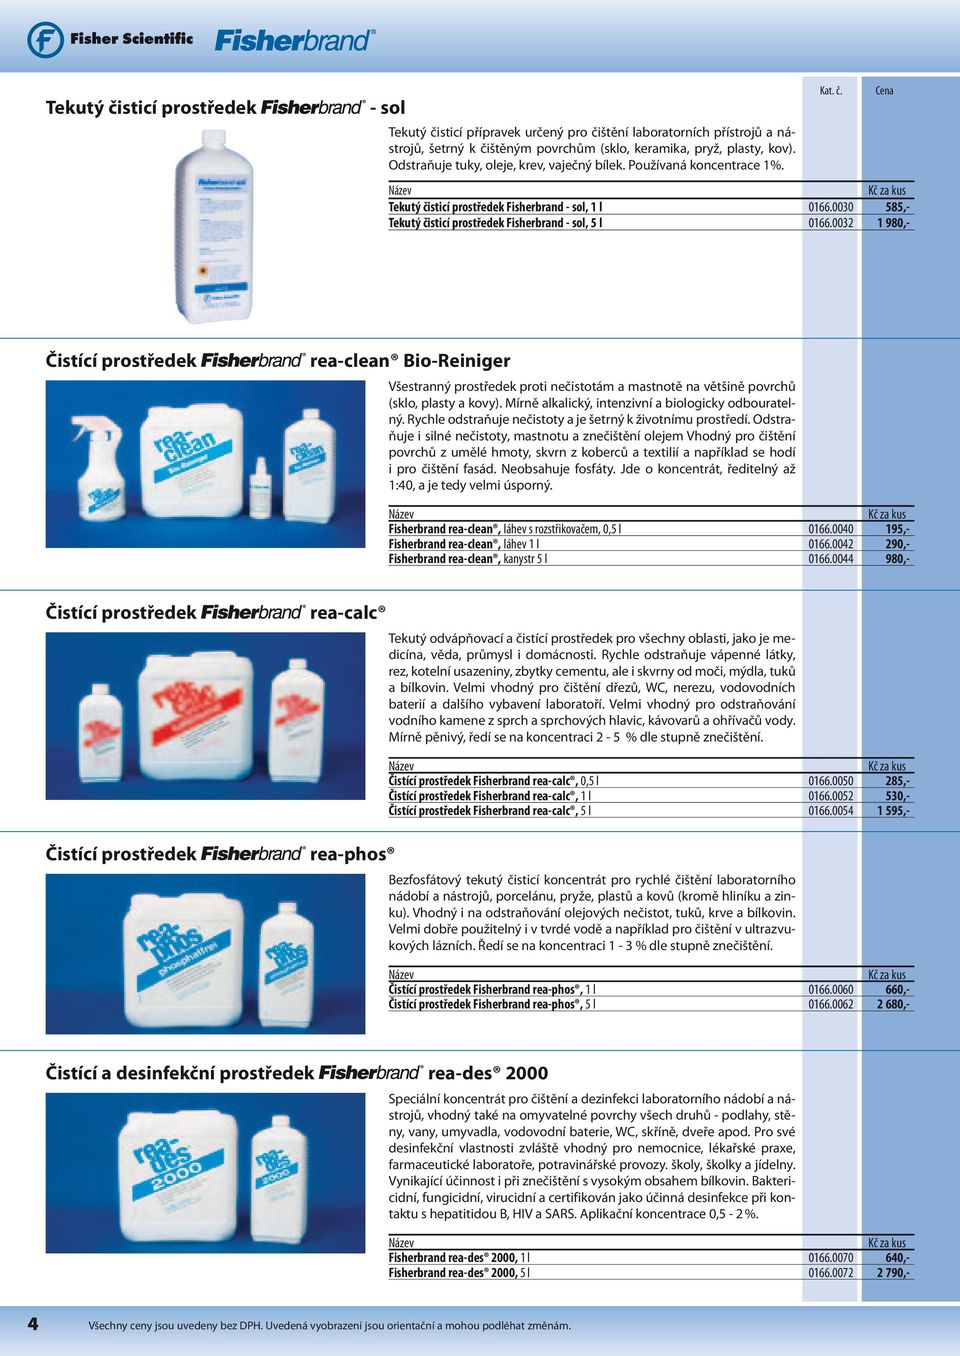 0032 1 980,- Čistící prostředek rea-clean Bio-Reiniger Všestranný prostředek proti nečistotám a mastnotě na většině povrchů (sklo, plasty a kovy).